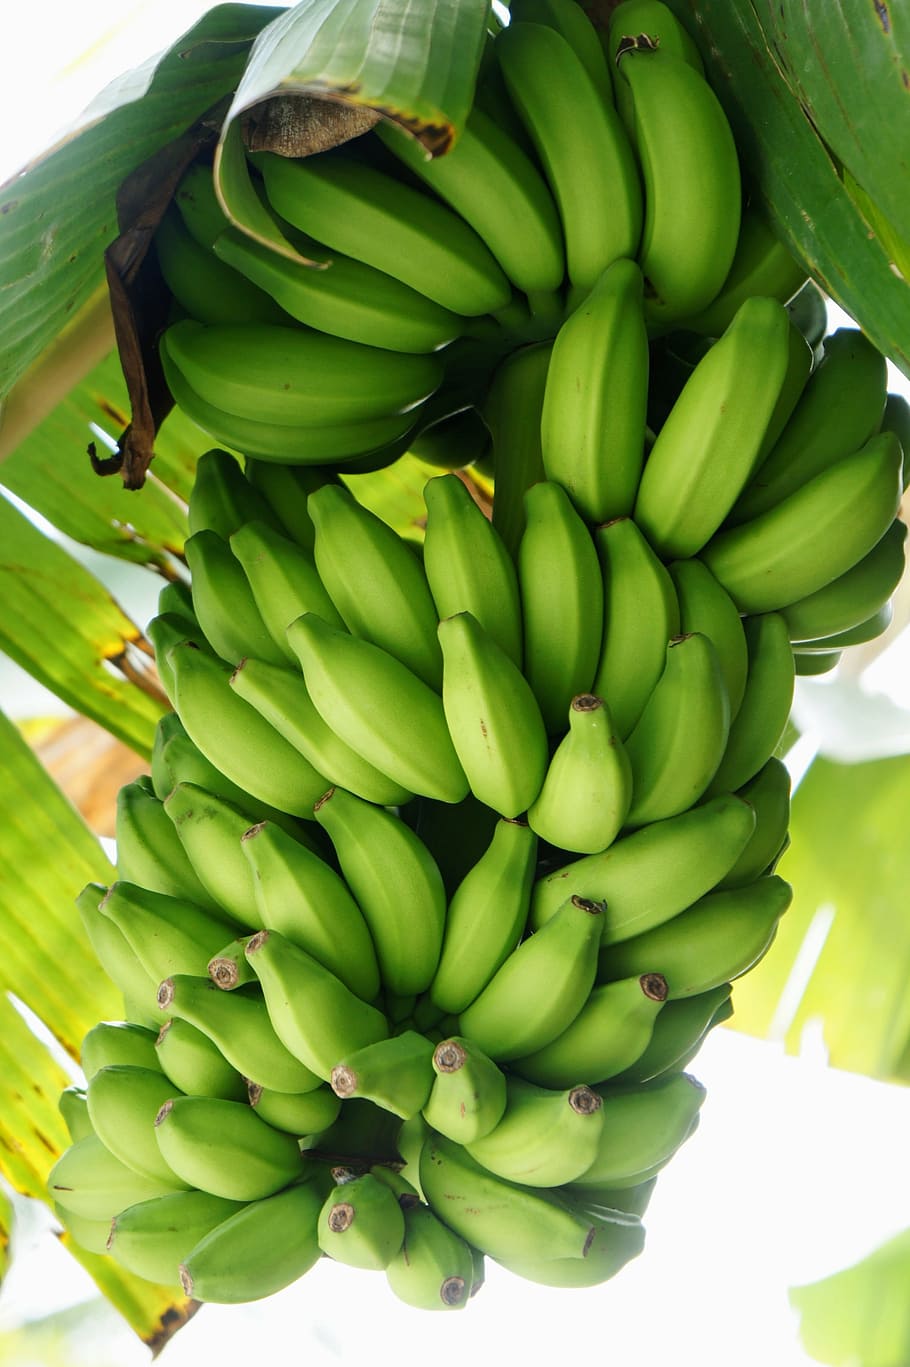 plátanos verdes, plátano, arbusto, arbusto de plátano, amarillo, saludable, fruta, color verde, comida y bebida, alimentos